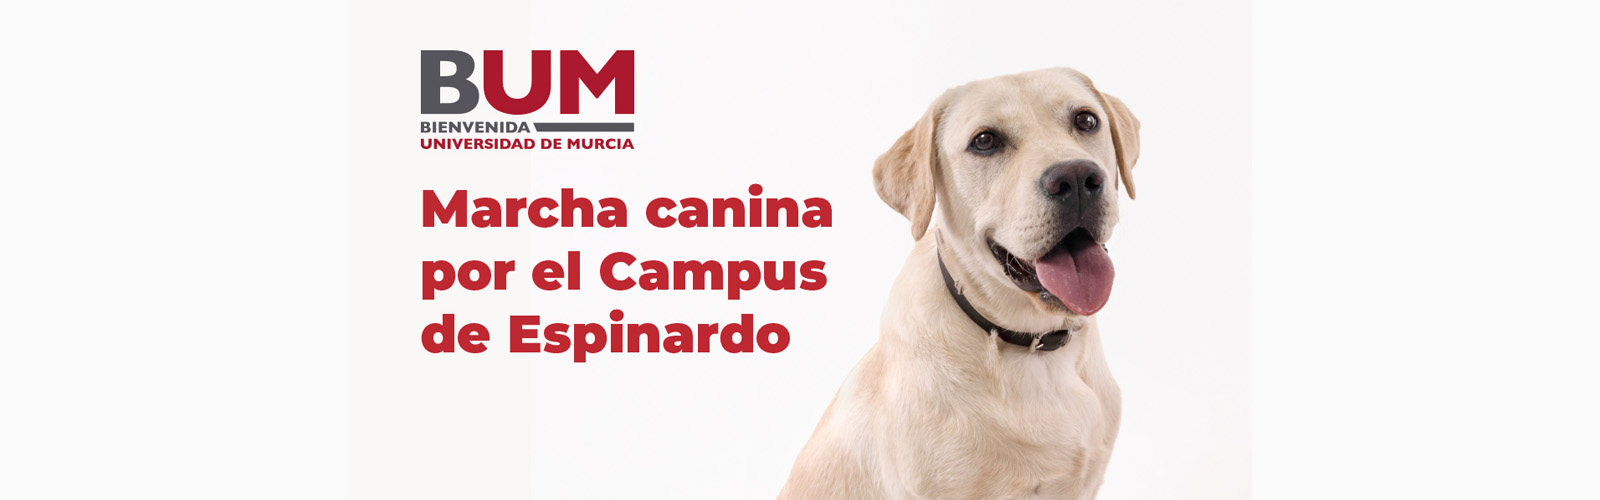 La Universidad de Murcia organiza una marcha canina por el campus de Espinardo